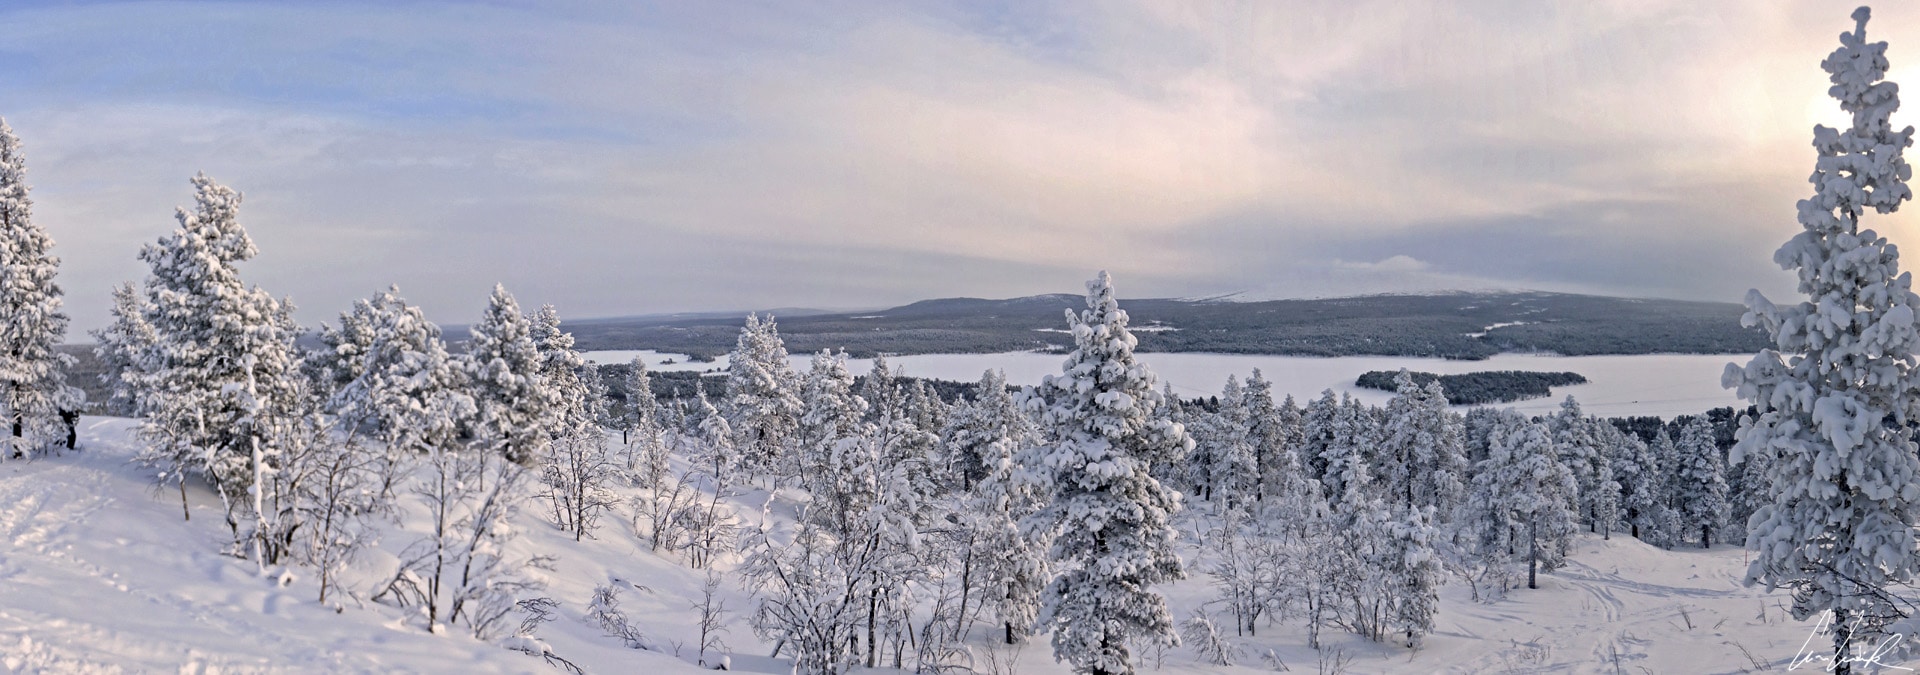 Du sommet de la colline Jyppyrä (700 mètres), on a une vue panoramique imprenable sur les arbres enneigés et le lac gelé Ounasjärvi.